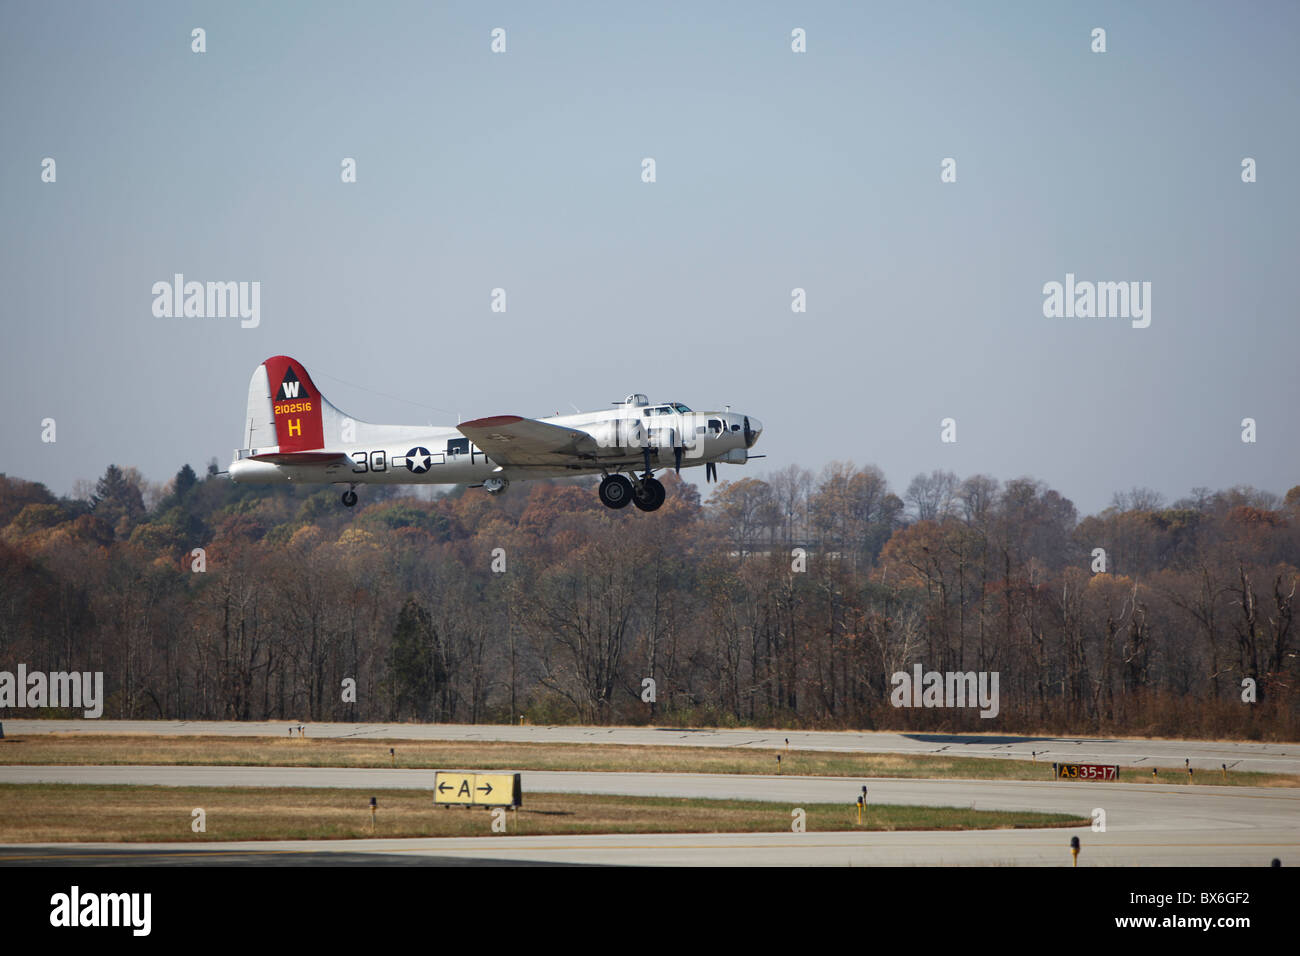 Aluminium bedeckt restaurierte b-17 Flying Fortress WWII Ära Bomber Flug Flug vom Start-und Landebahn Armee Luft Luft-Korps Flughafen Monroe Grafschaft Indiana Bloomington Stockfoto